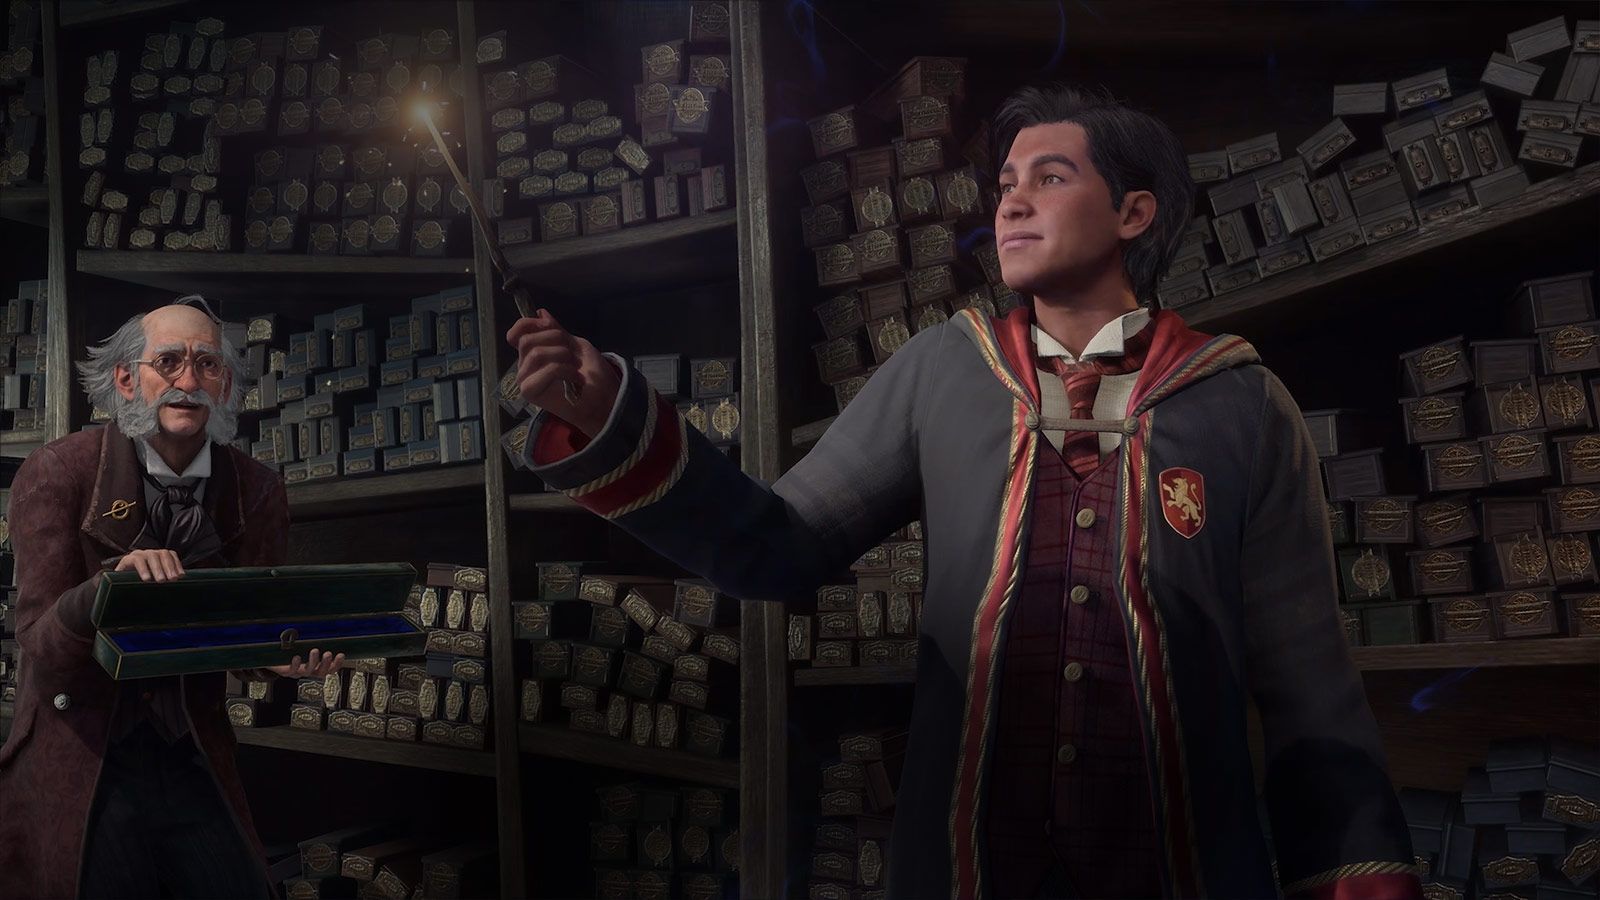 Hogwarts Legacy si mostra per la prima volta su Switch: carrellata di  immagini per il gioco